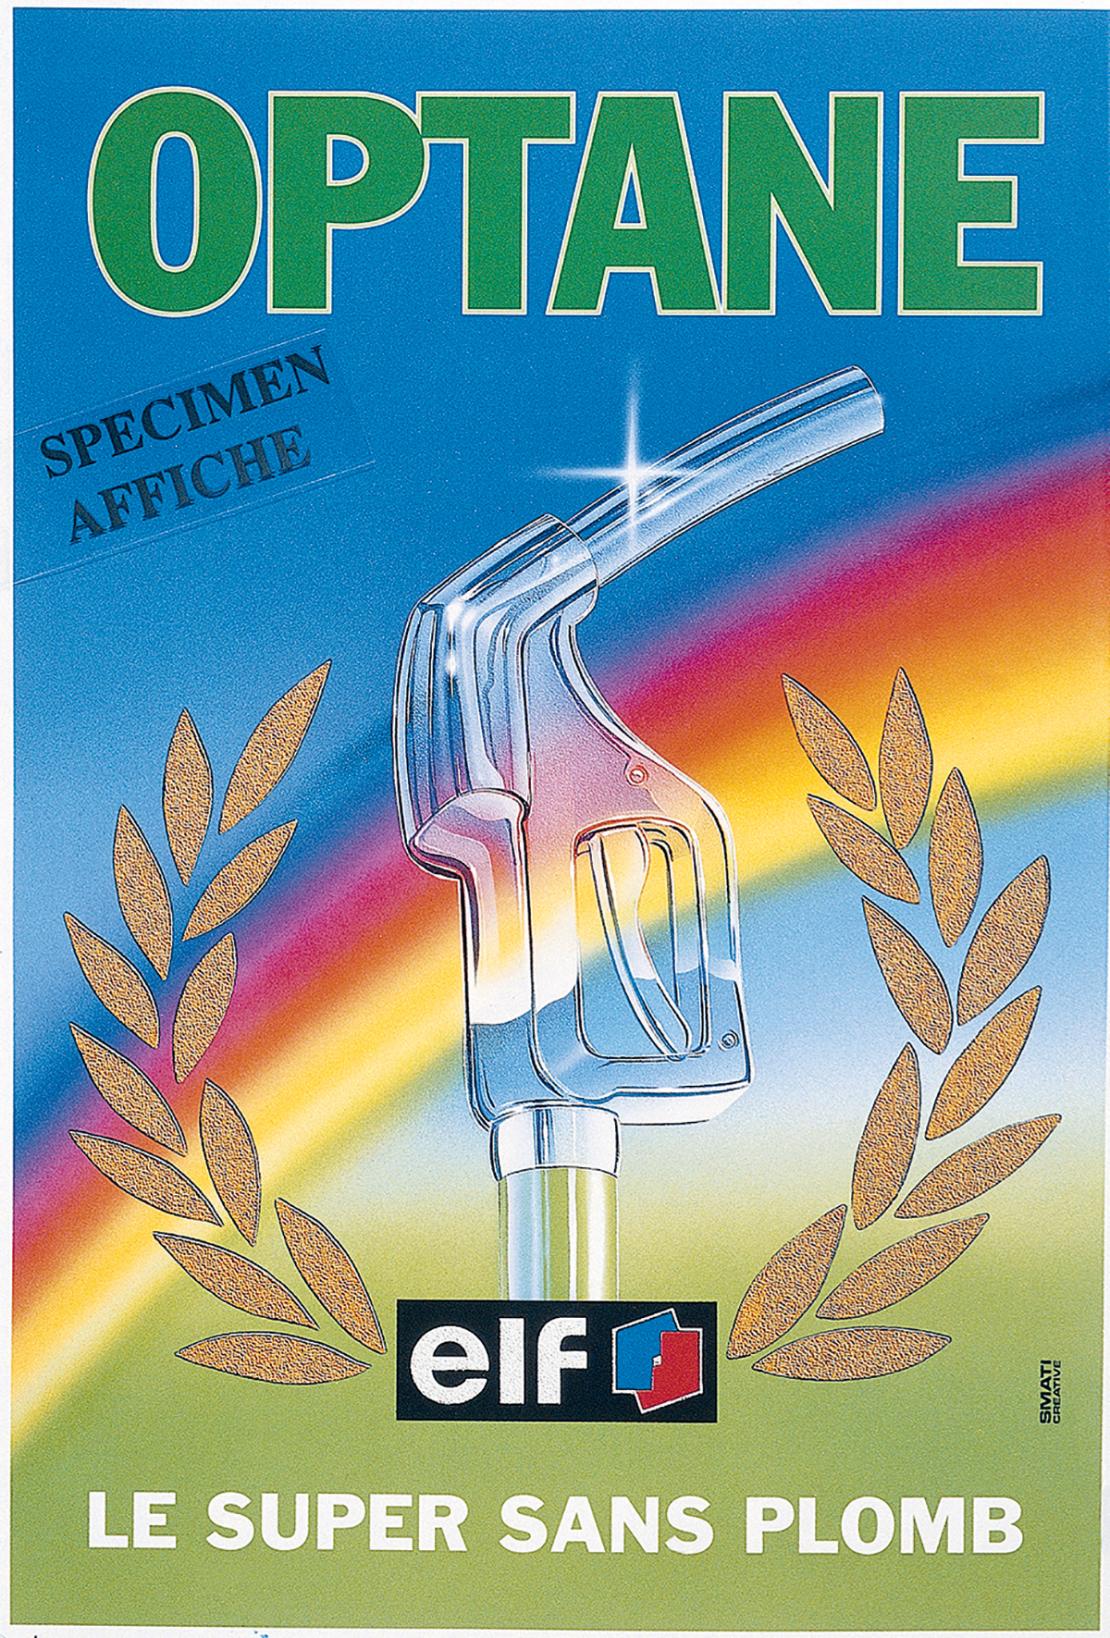 Affiche OPTANE, Elf, Le super sans polmb, 1990